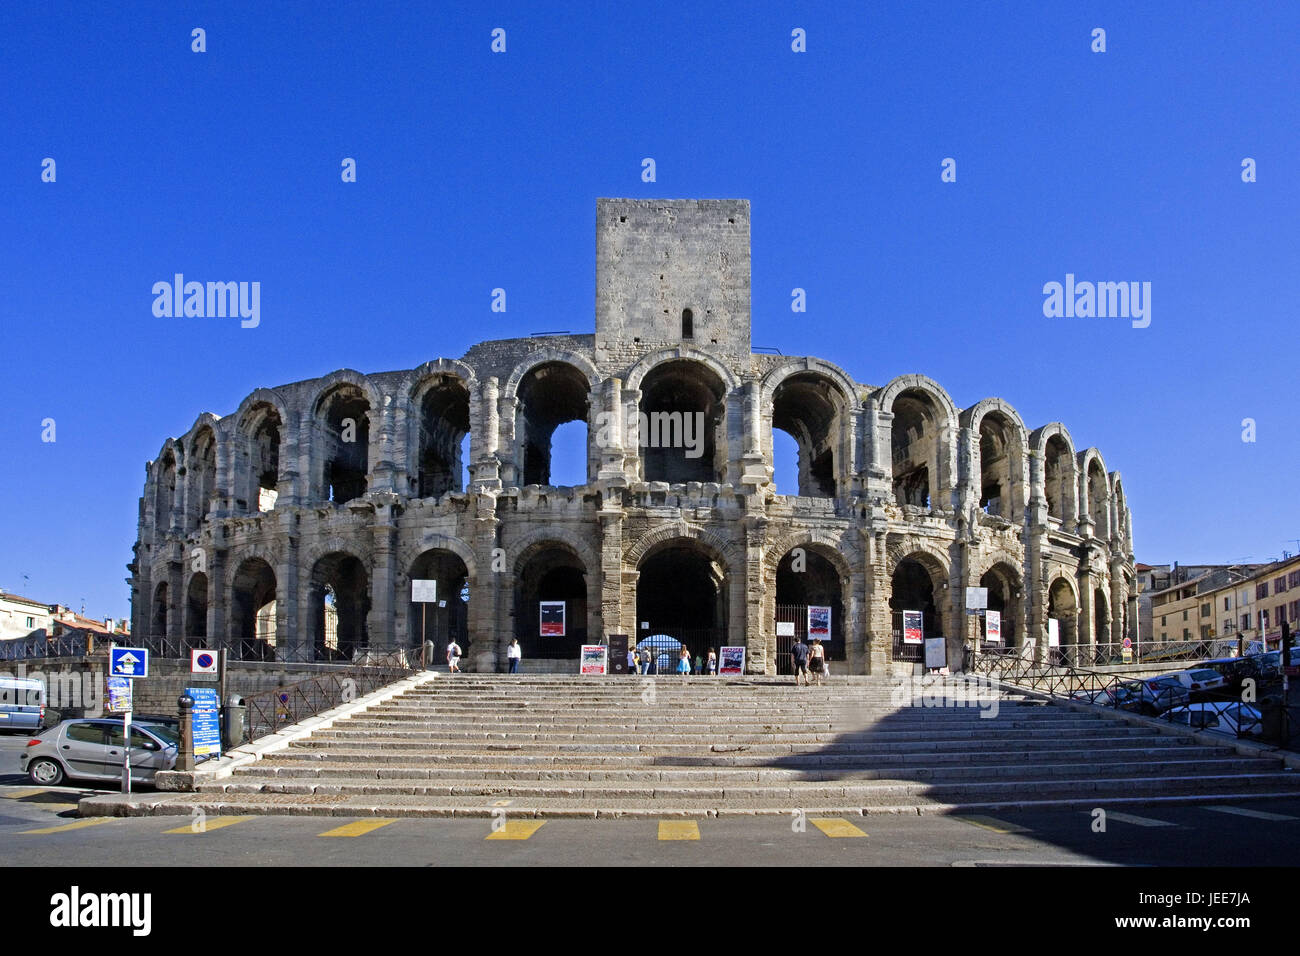 Francia, Arles, anfiteatro romano, facciata, Provenza, struttura edificio, arena, storicamente, antica, architettura, UNESCO-patrimonio culturale mondiale, fuori luogo di interesse, turismo, destinazione Foto Stock